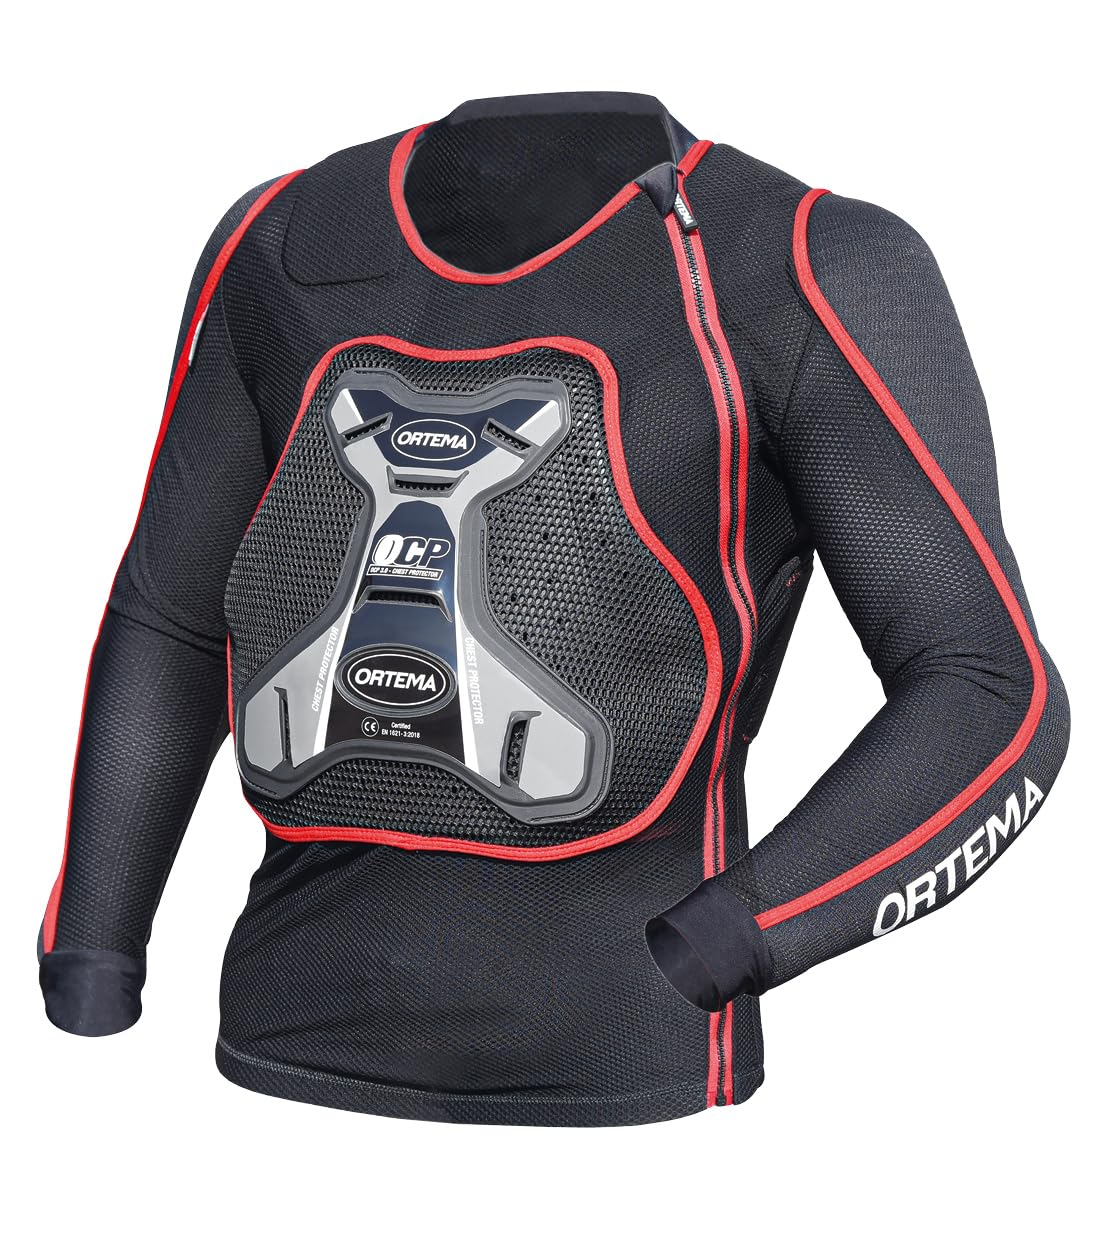 ORTEMA ORTHO-MAX Jacket DUO - Protektorenjacke für den optimalen Rundumschutz - Schützt die Wirbelsäule, Brust, Schultern und Ellenbogen - Motocross/Enduro (L) von ORTEMA